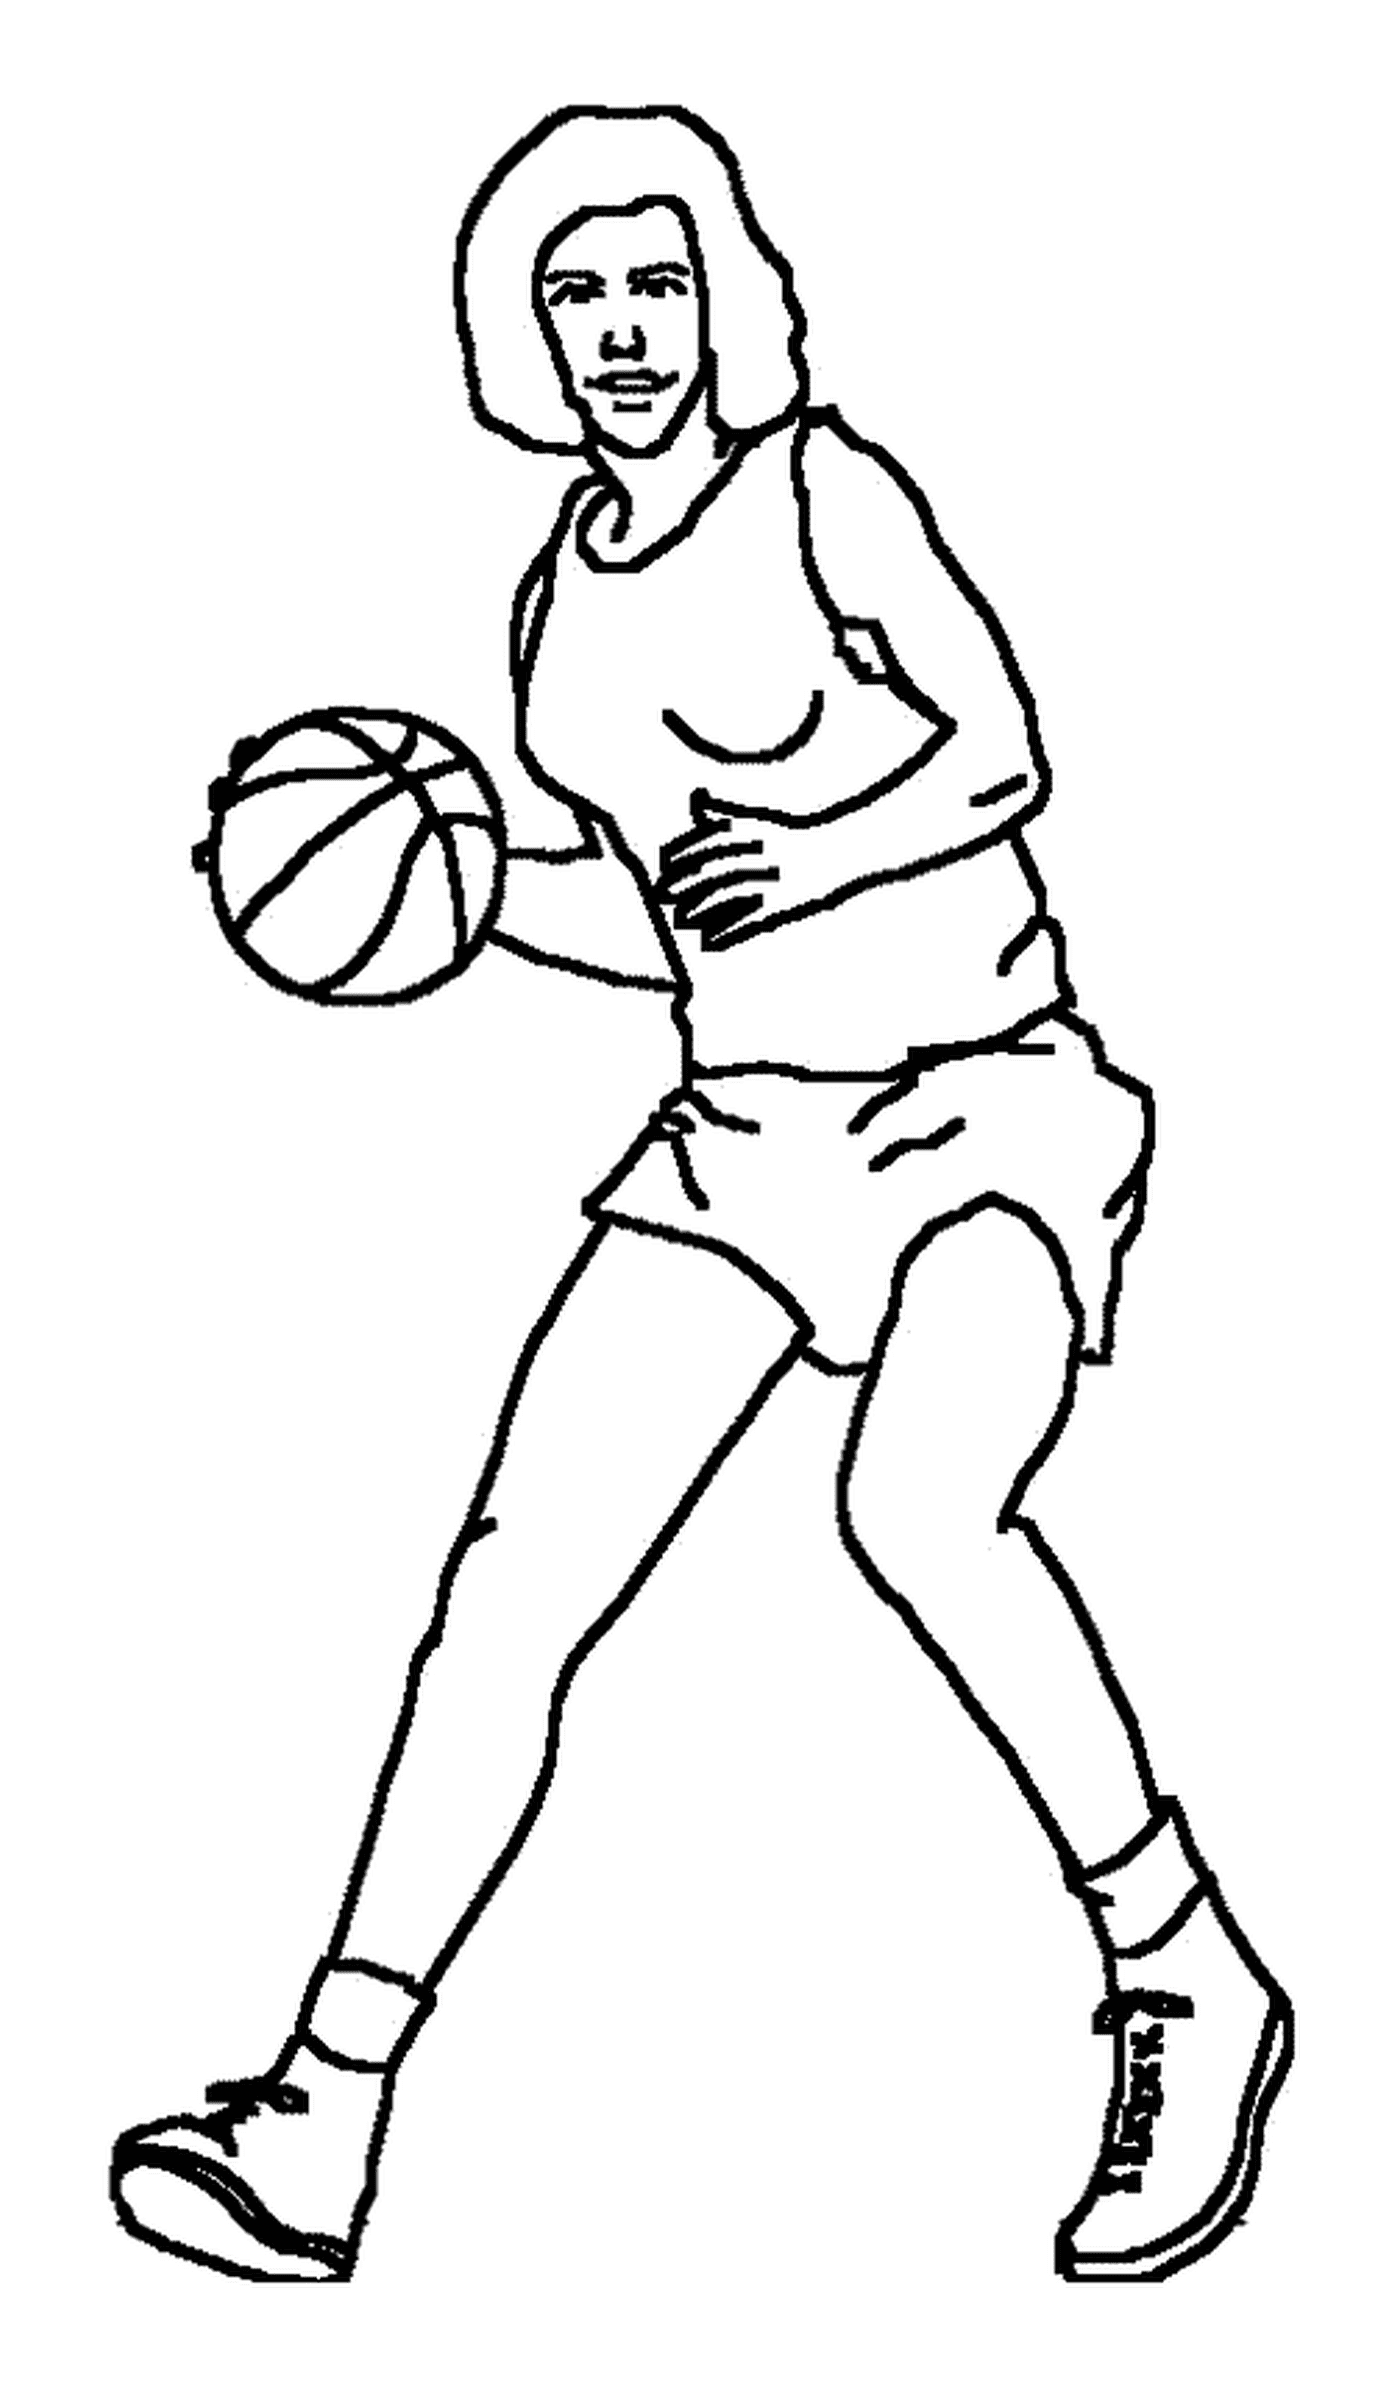  Un jugador de baloncesto con una pelota 